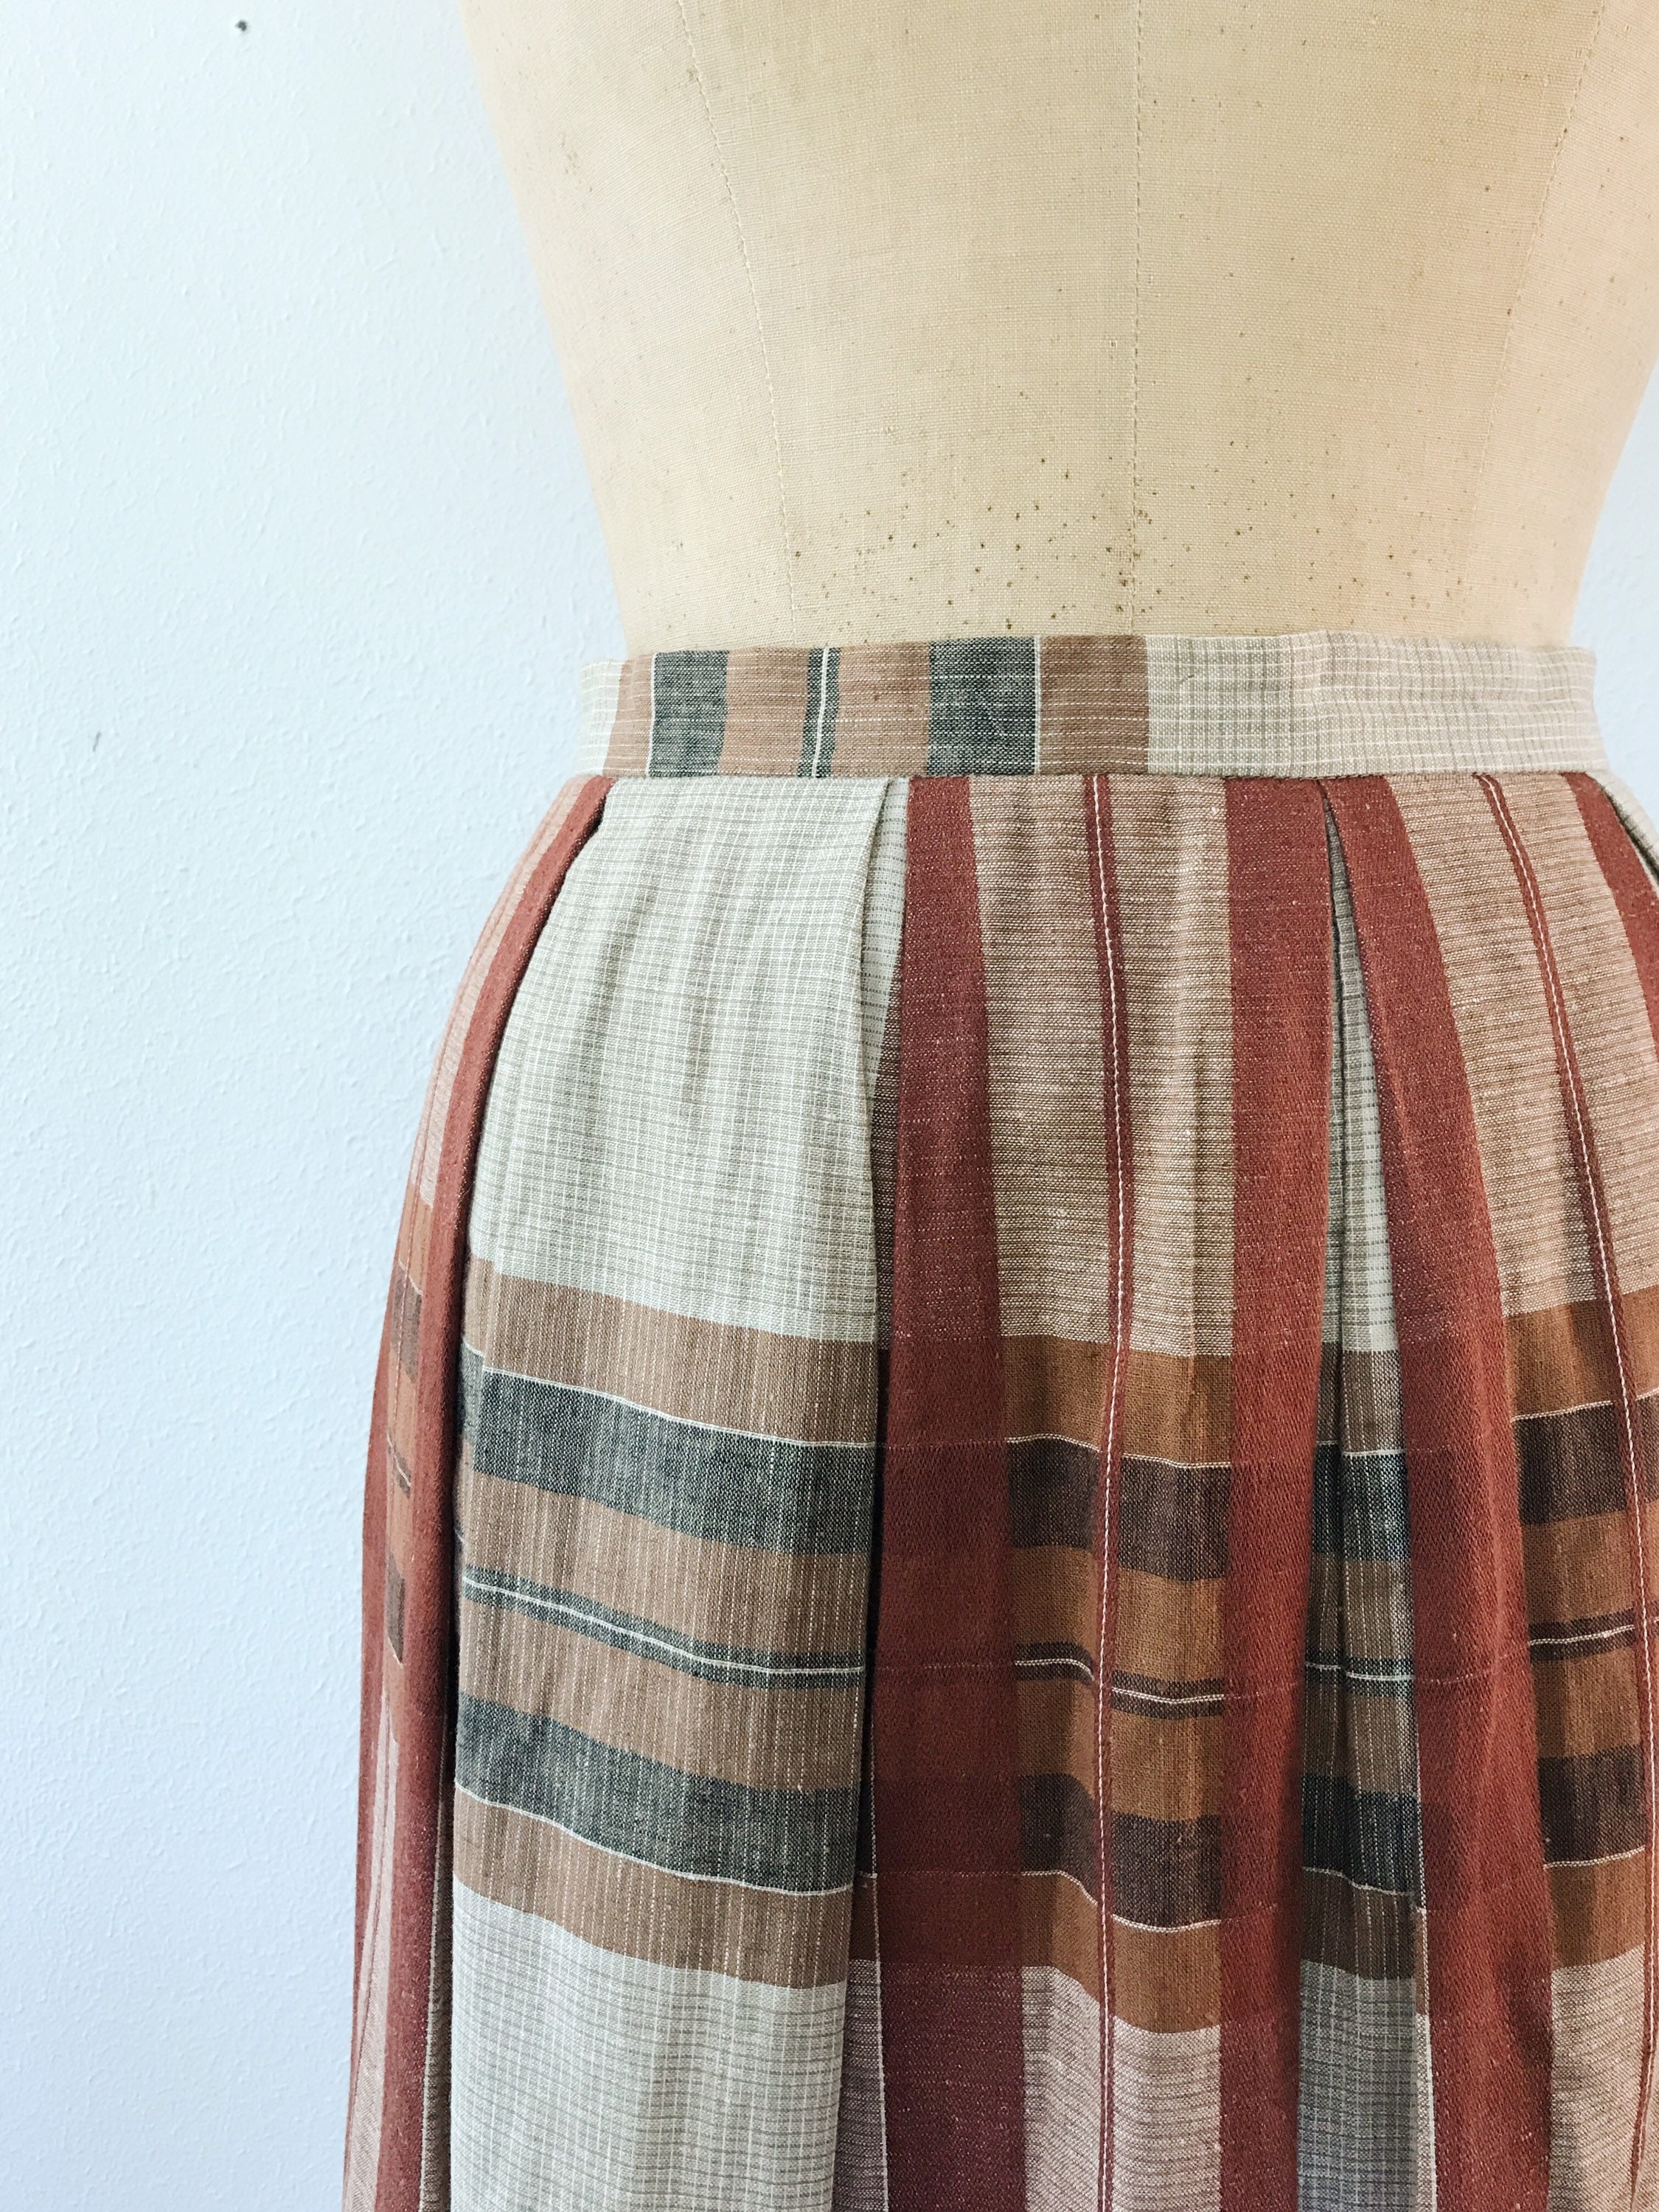 Summer Madras skirt / 80s vintage skirt / vintage pleated skirt